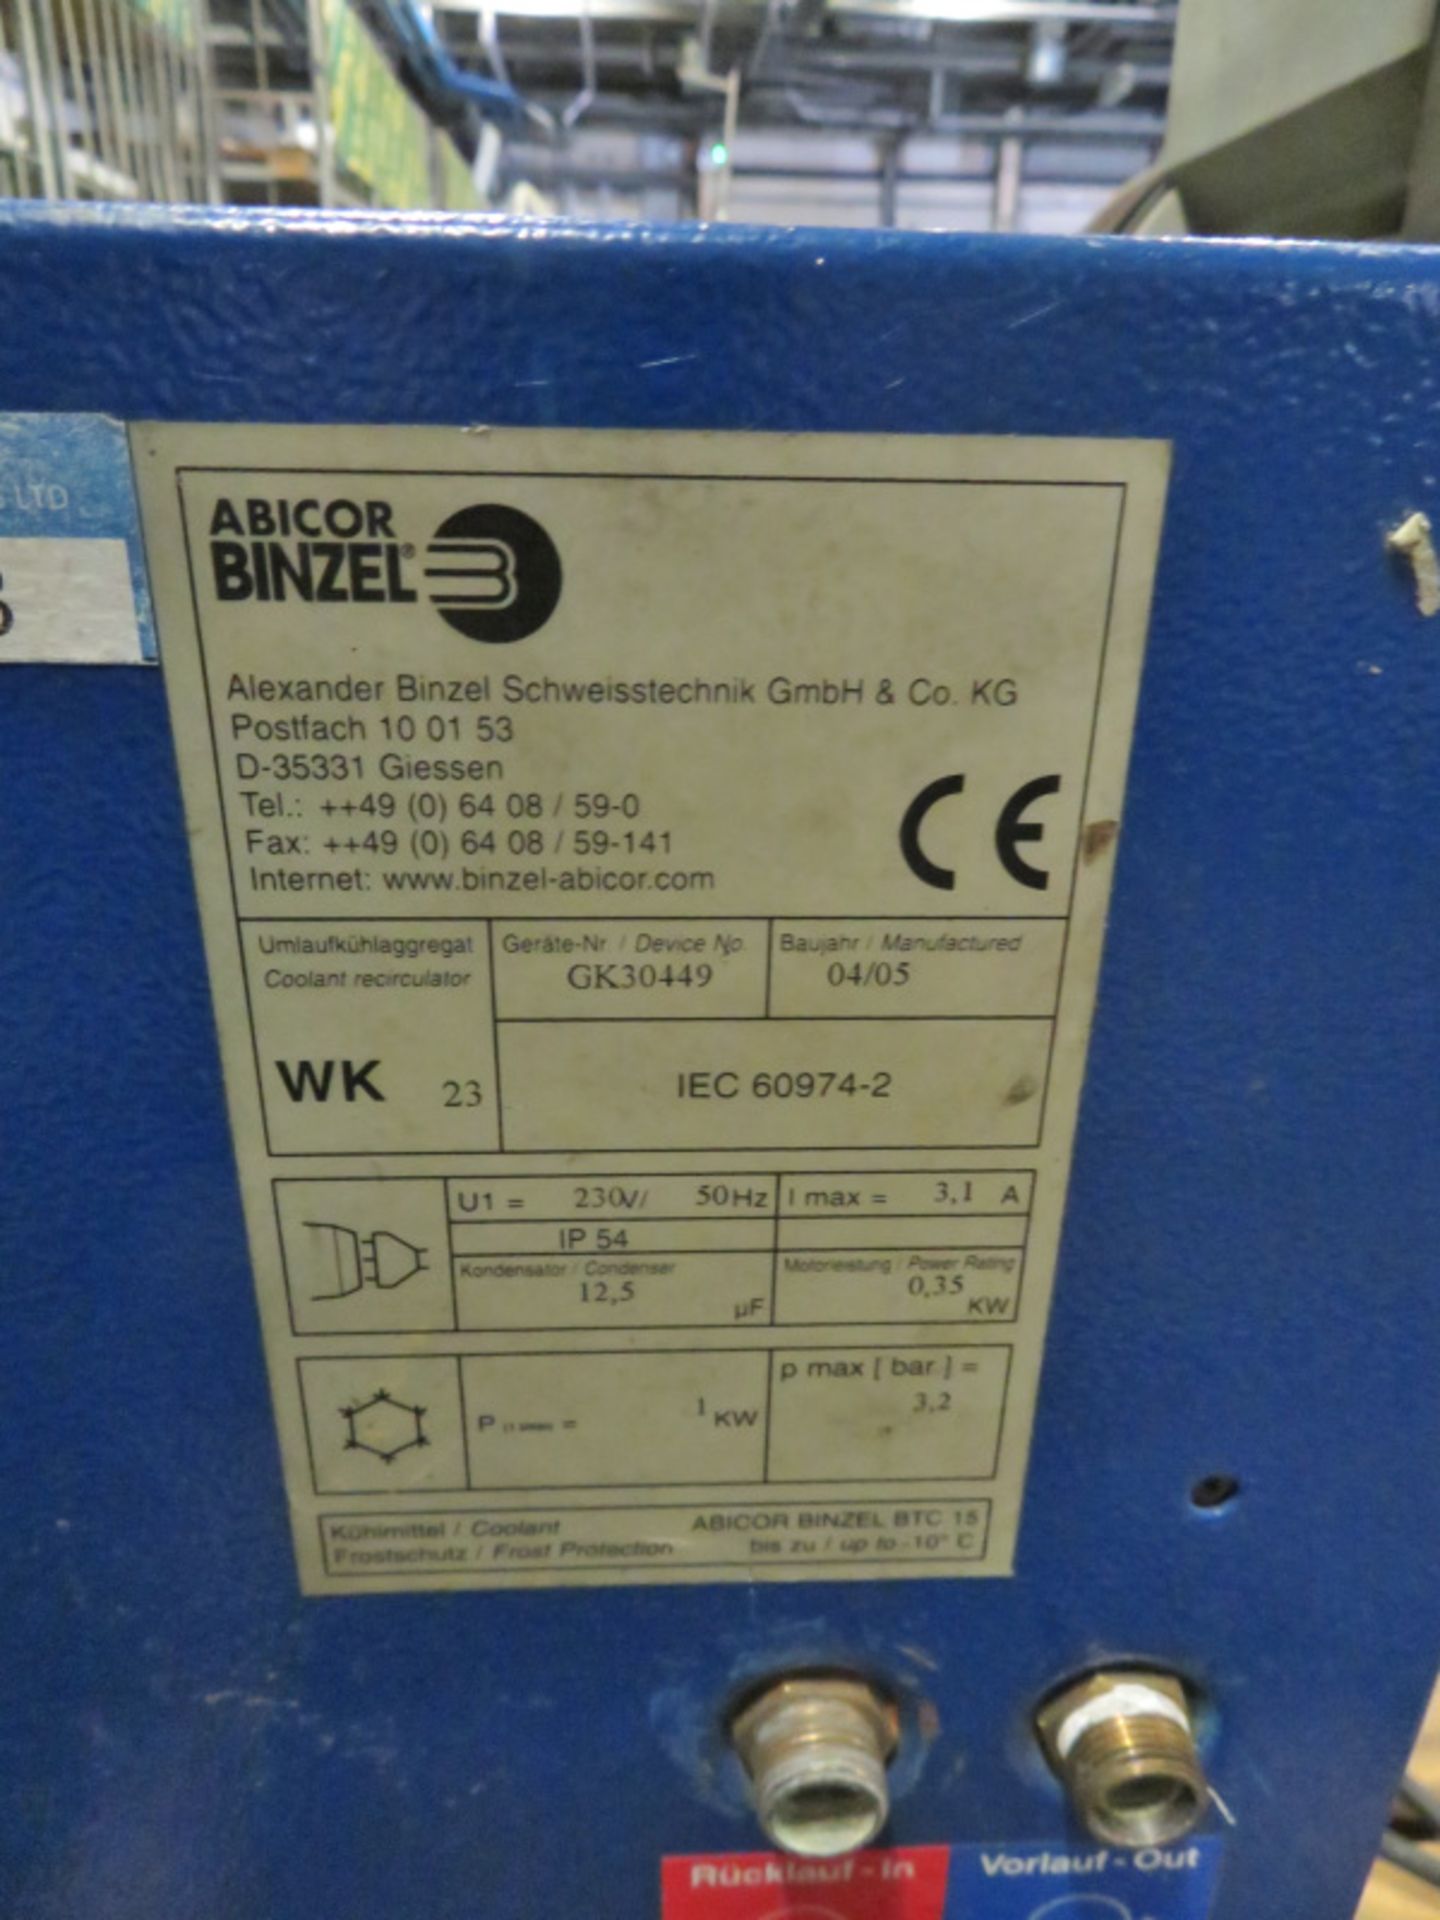 Abicor Binzel coolant recirculator 230V for welder - Image 4 of 4